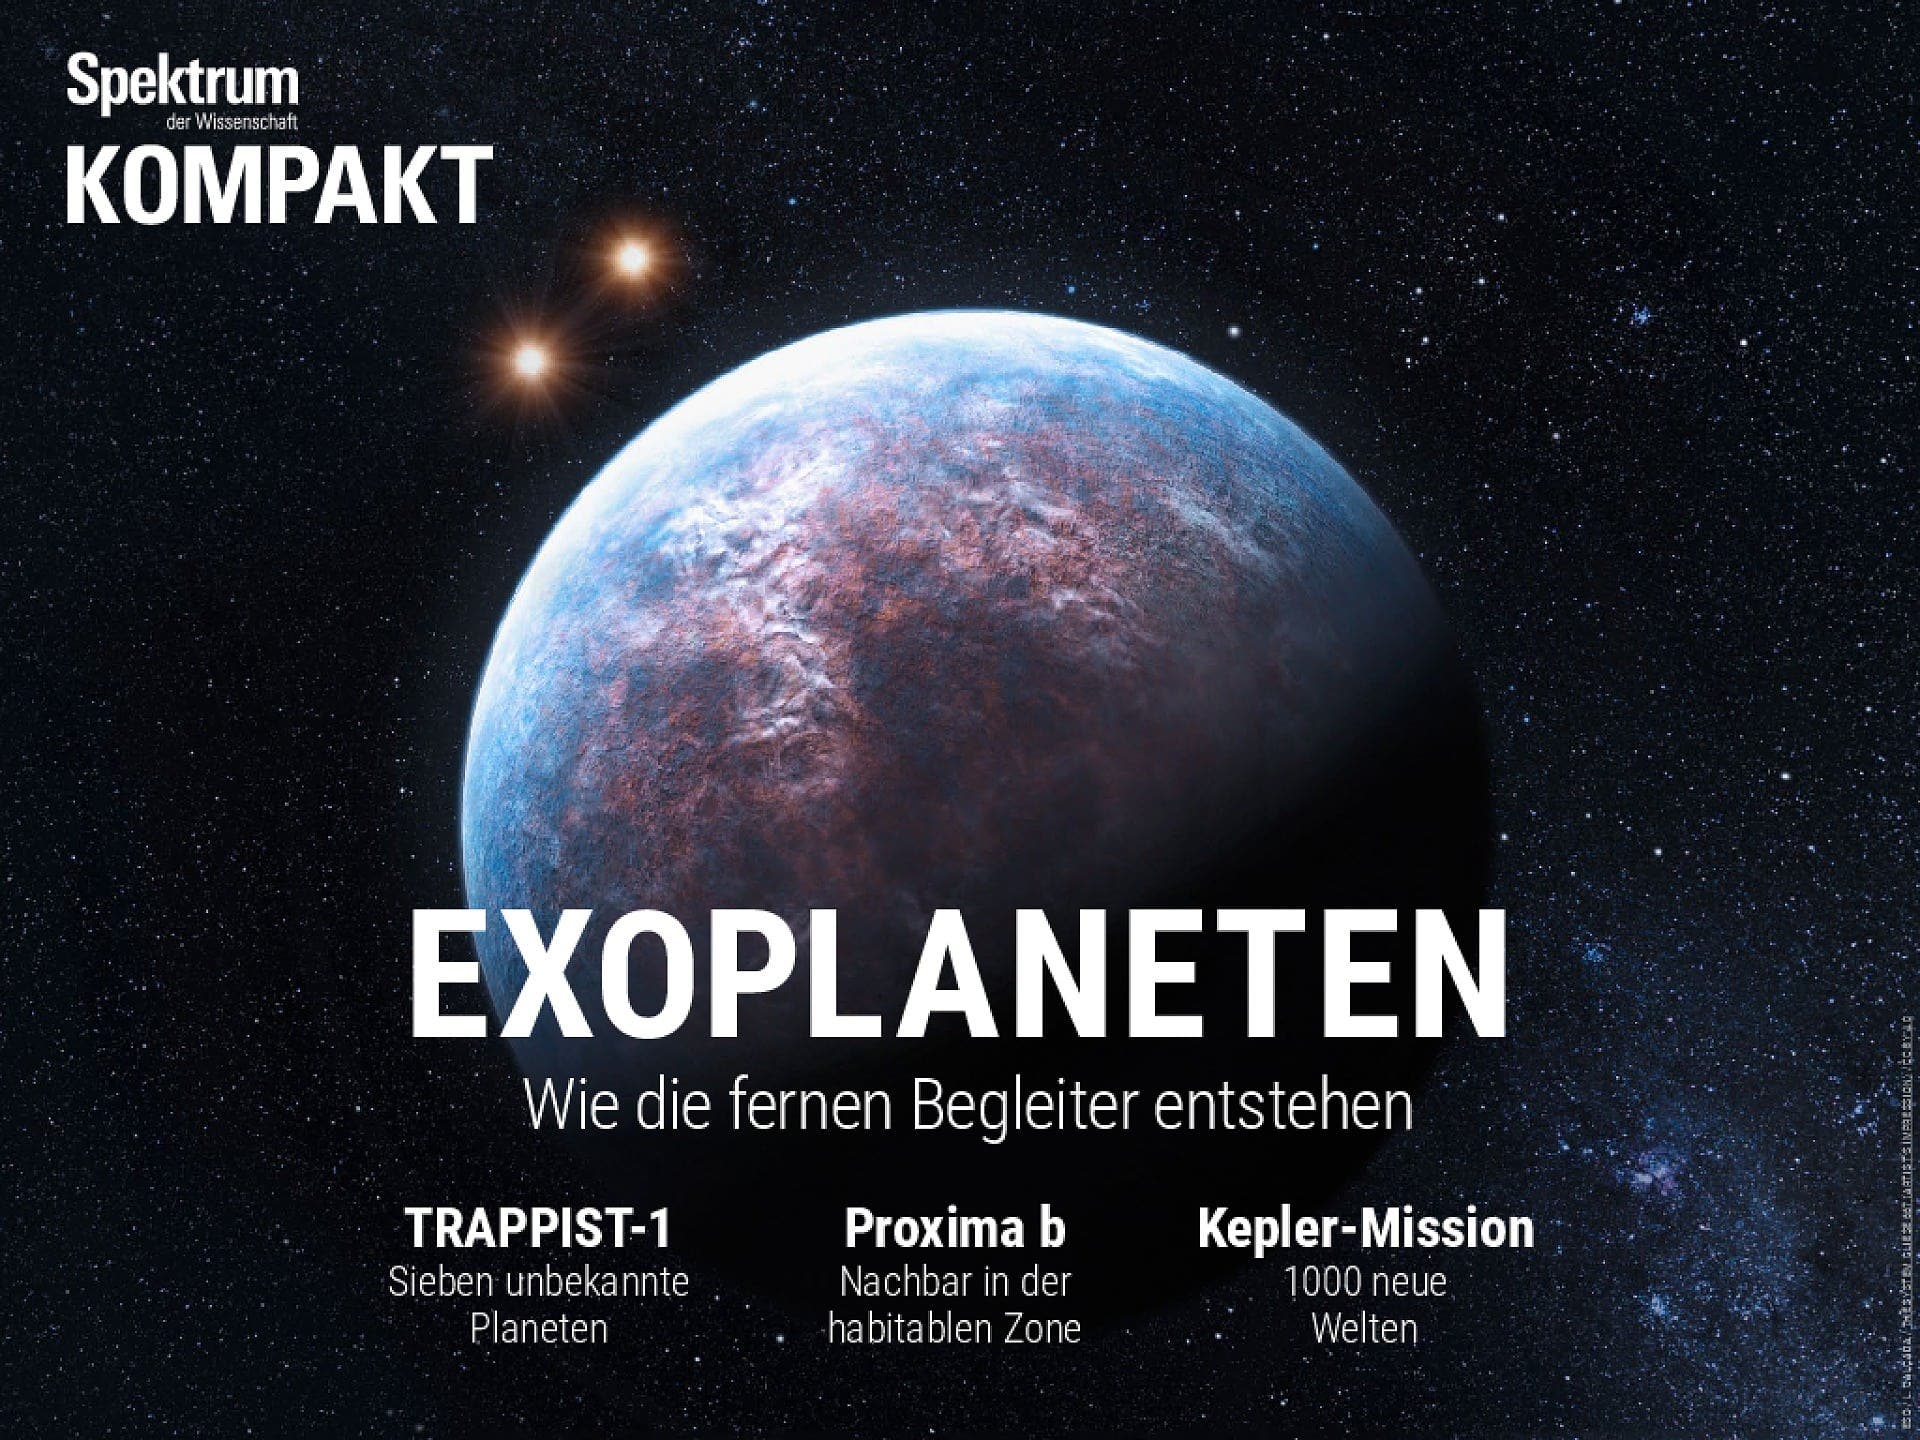 Exoplaneten - Wie die fernen Begleiter entstehen